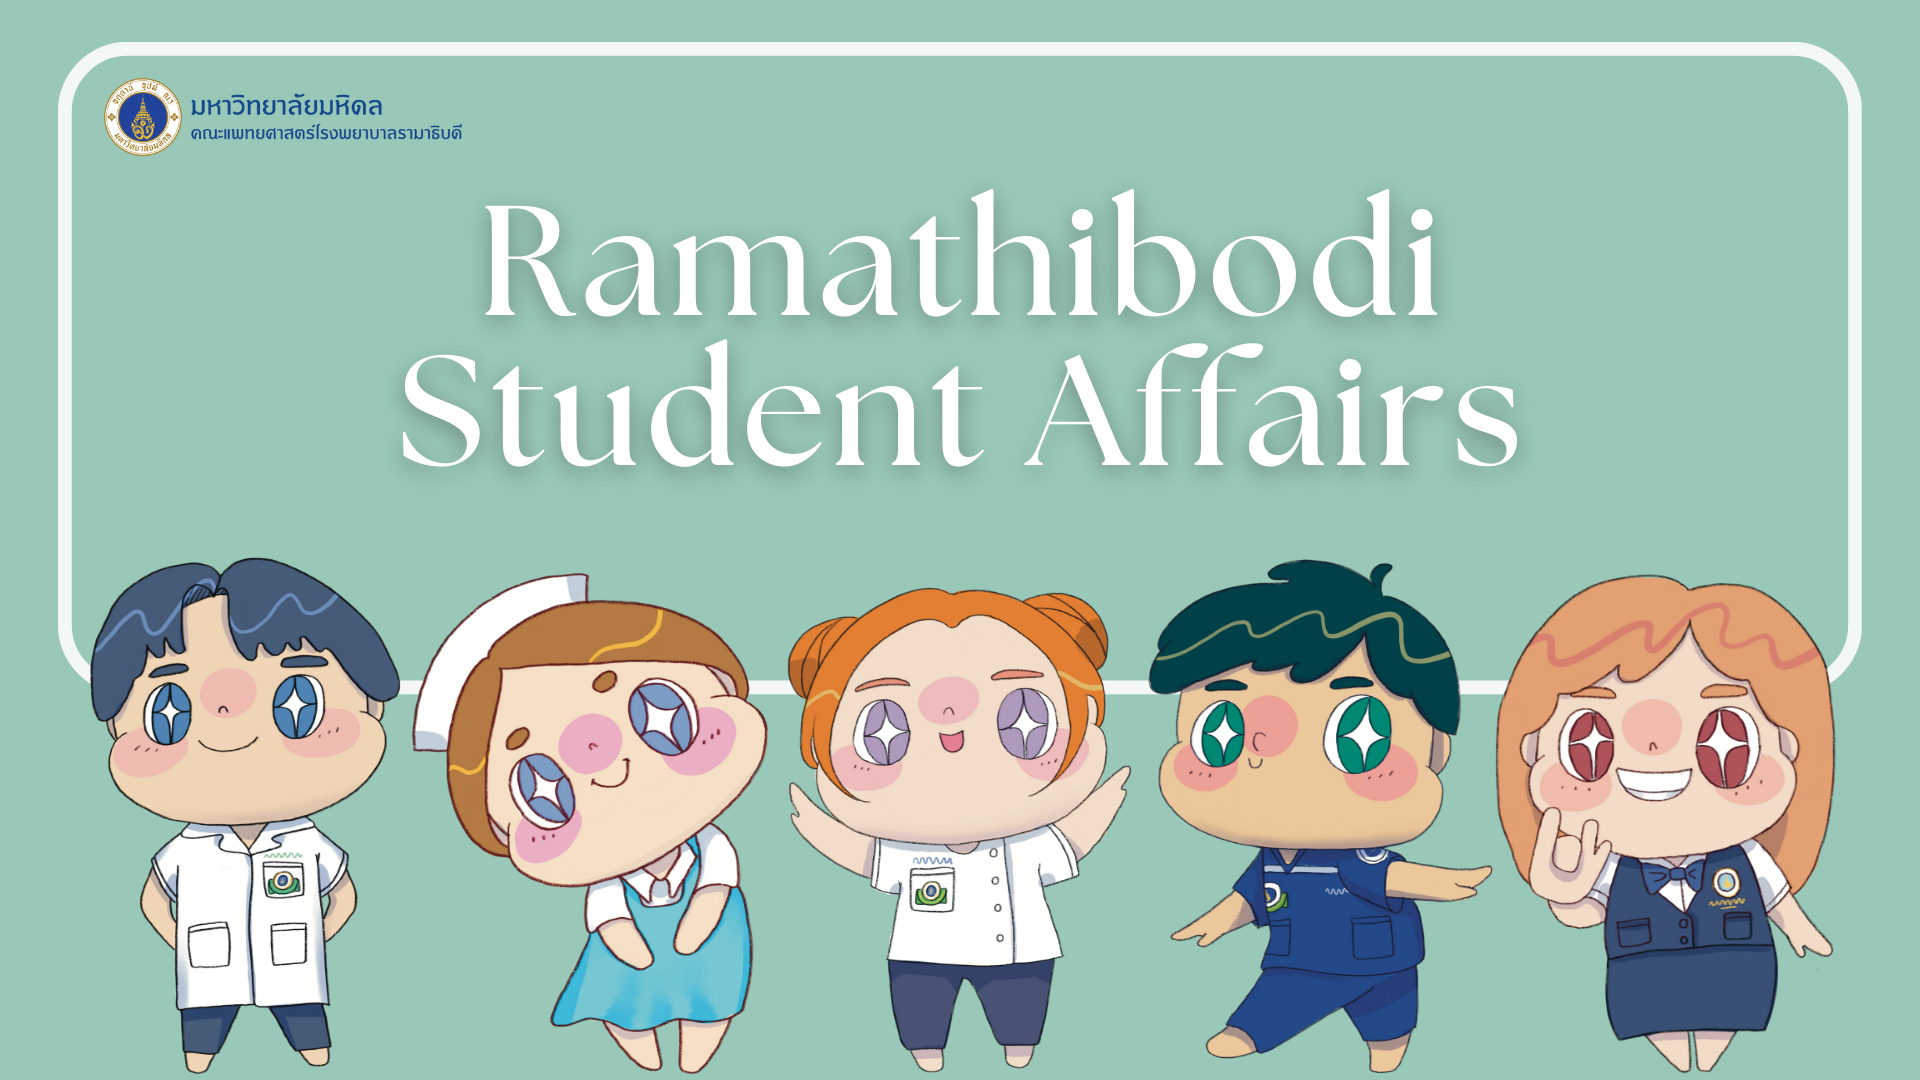 Ramathibodi Student Affairs